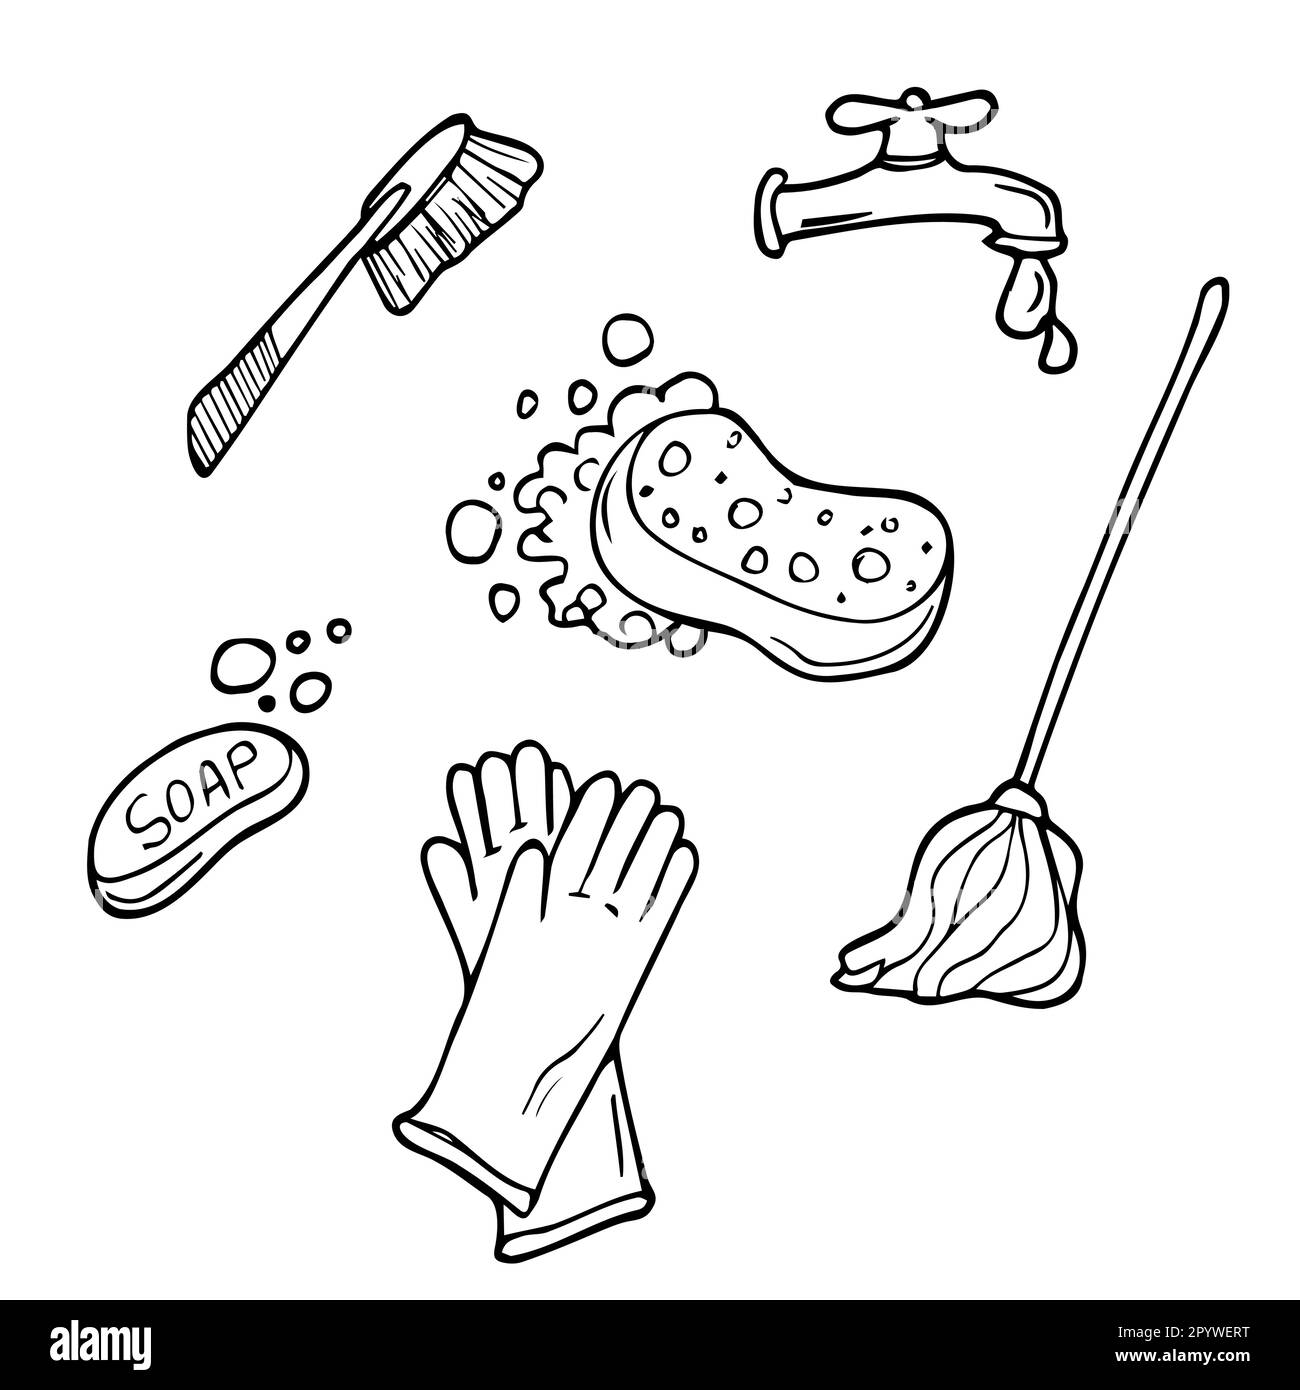 Doodle conjunto de artículos para la limpieza - mopa, cepillos, detergentes, cubo, cuchara, guantes de goma, jabón, esponjas, toallas de papel. Equipo de trabajo para mantener el Ilustración del Vector